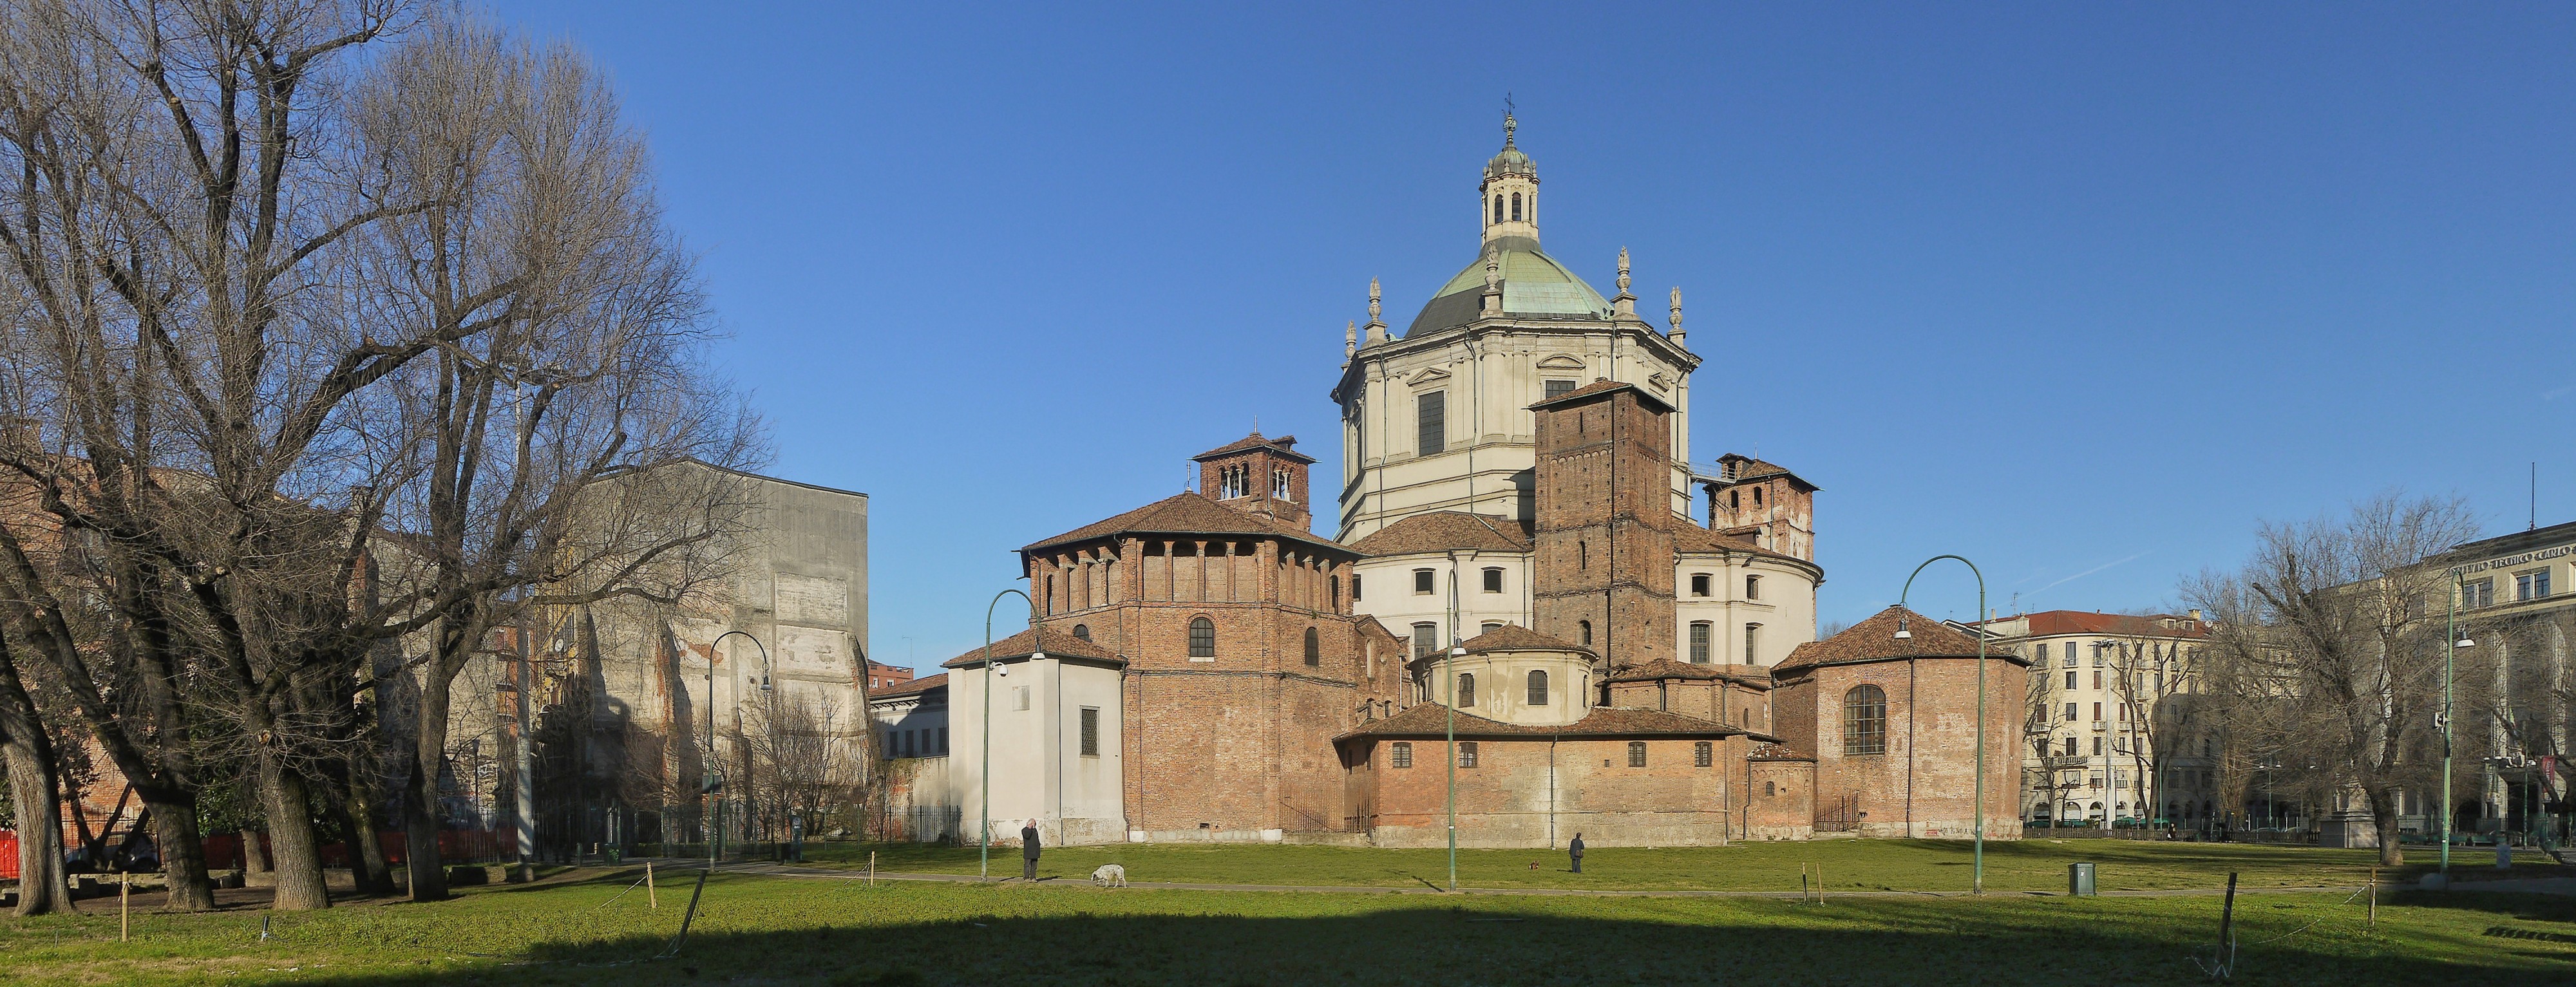 Basilica di San Lorenzo Maggiore1